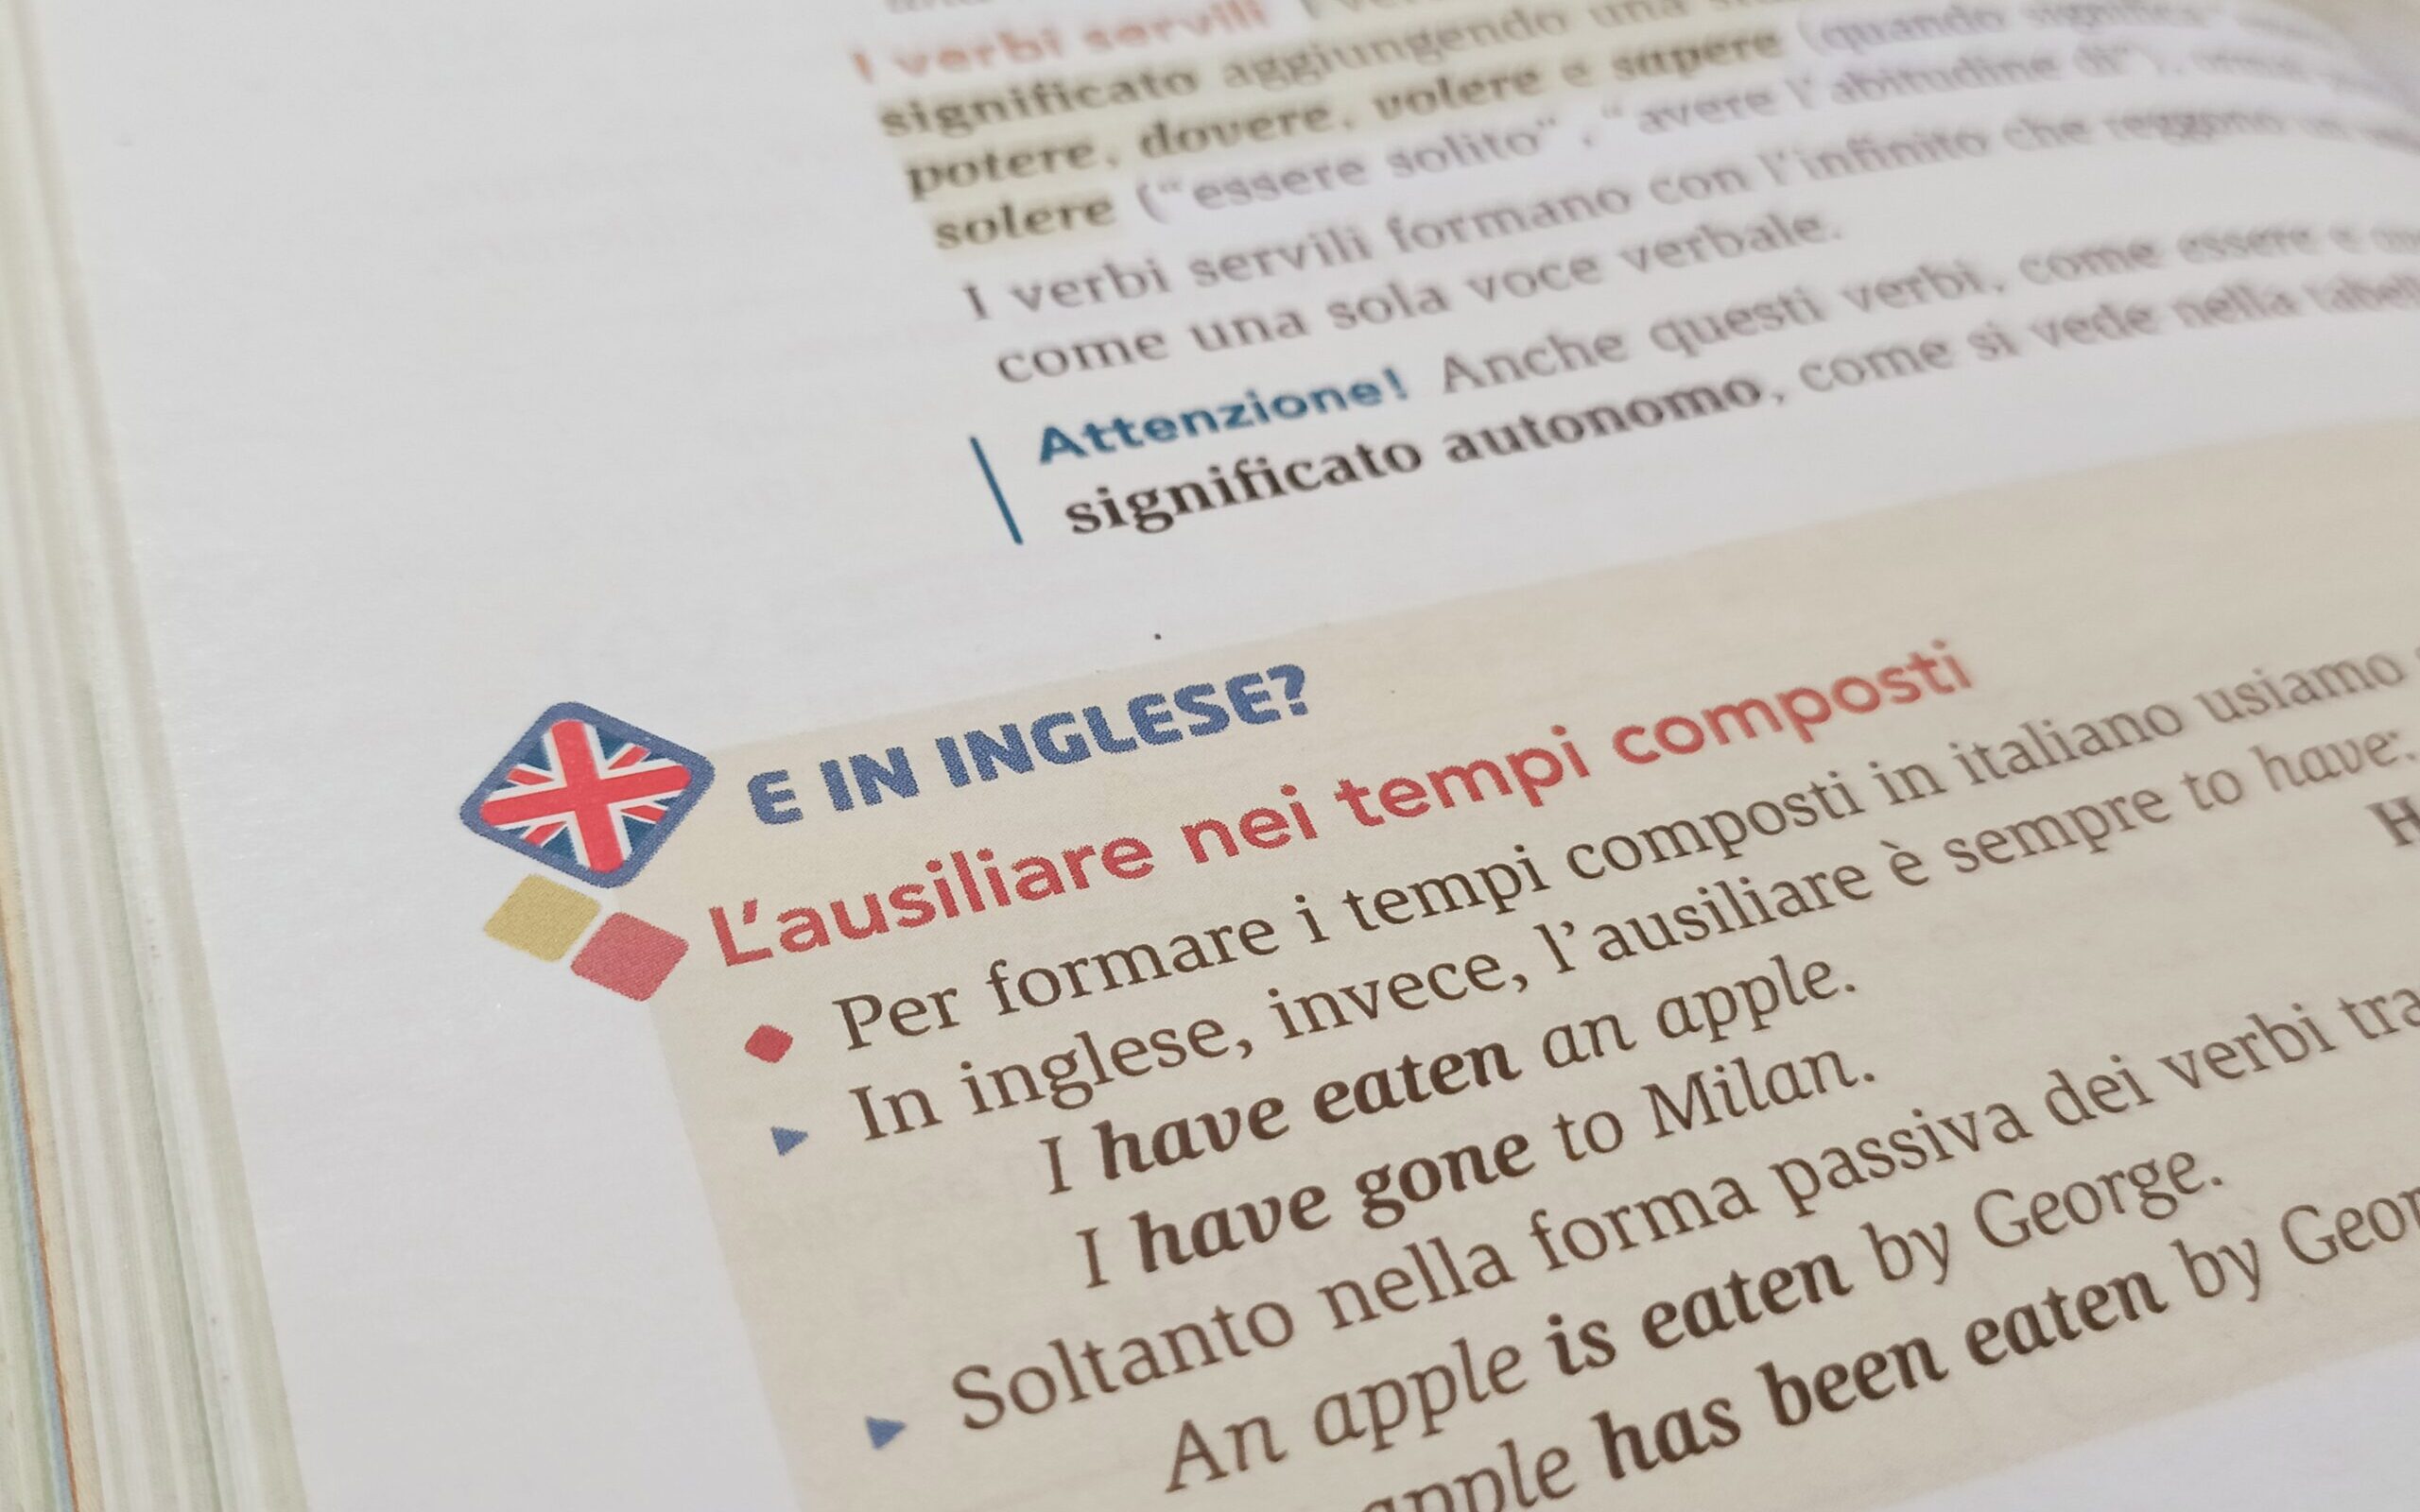 La nuova grammatica “coloniale” dell'italiano comparato con l'inglese 